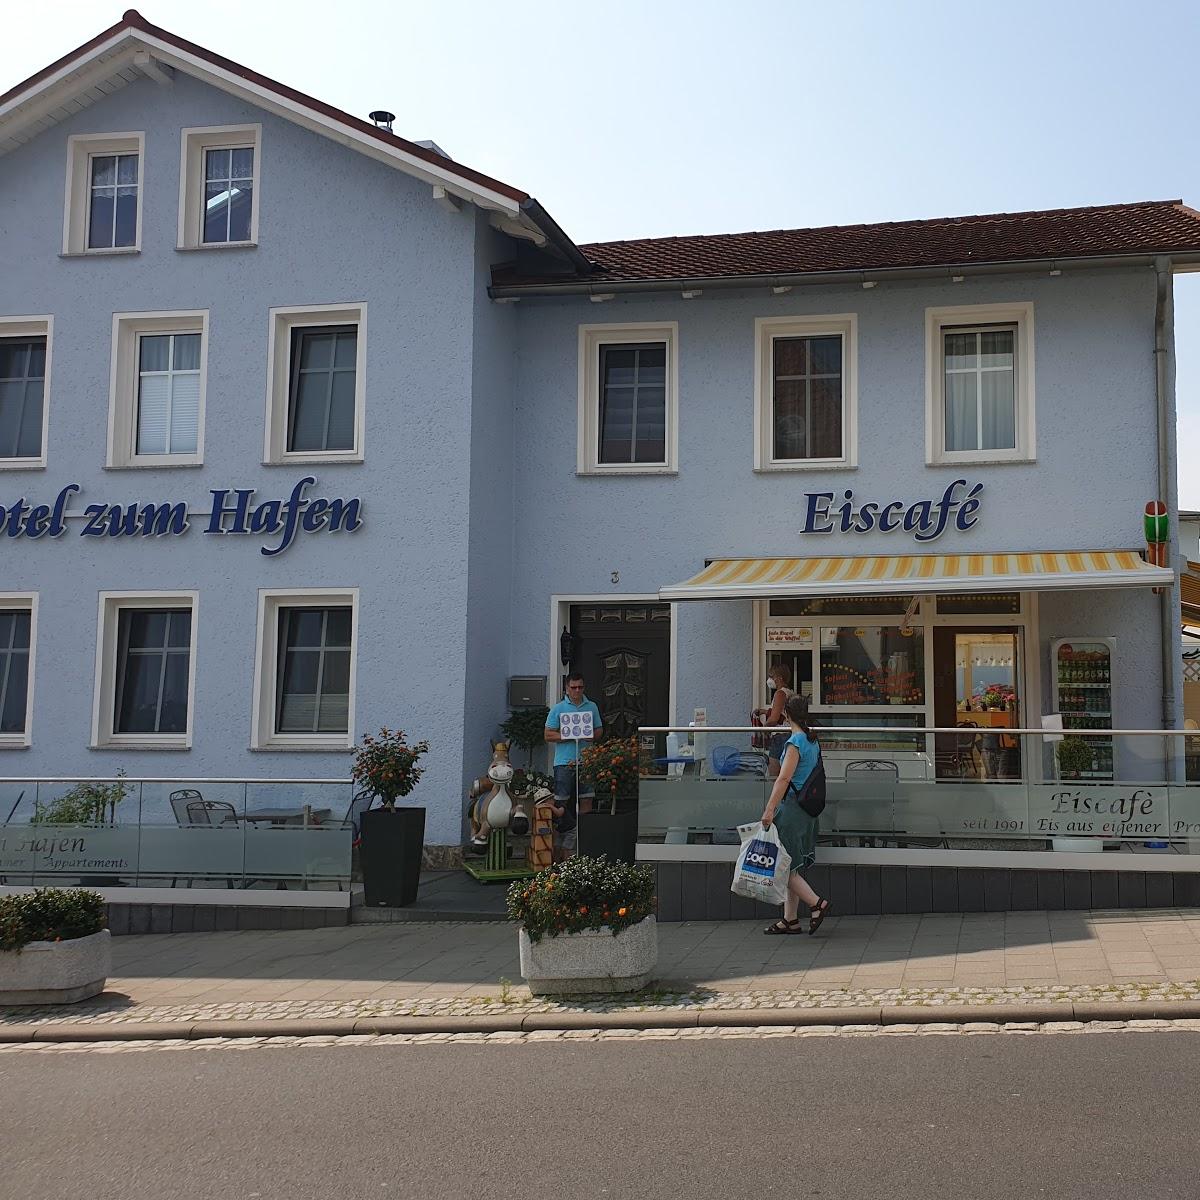 Restaurant "Eisdiele im er Stadthafen" in Sassnitz